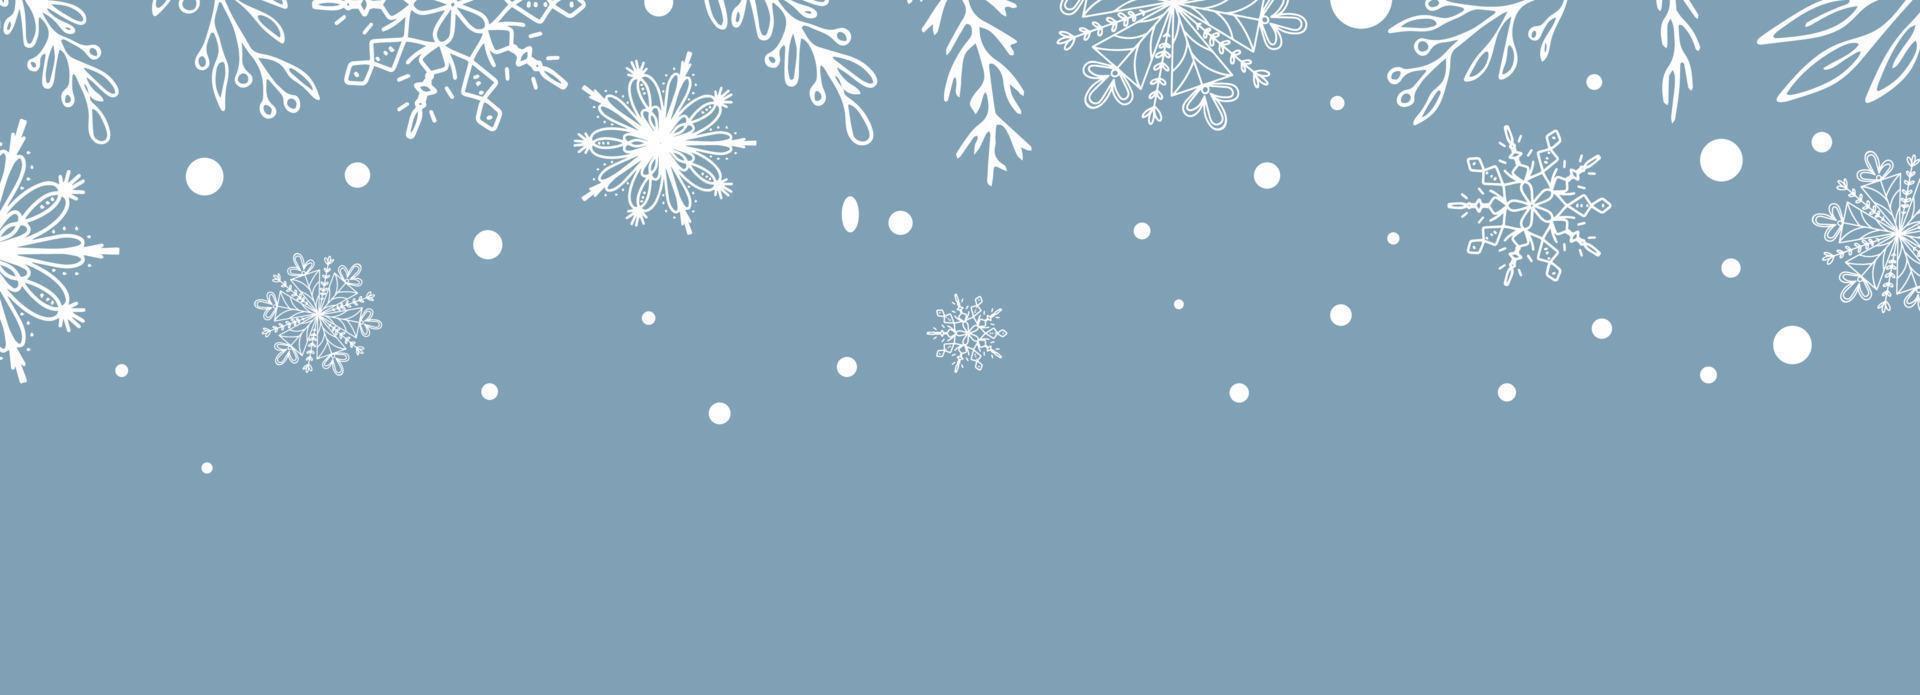 schöner satz weißer botanischer elemente weihnachtsbaum, beeren für winterdesign. sammlung von weihnachtsneujahrselementen. gefrorene Silhouetten von Kristallzweigen auf blauem Hintergrund. vektor